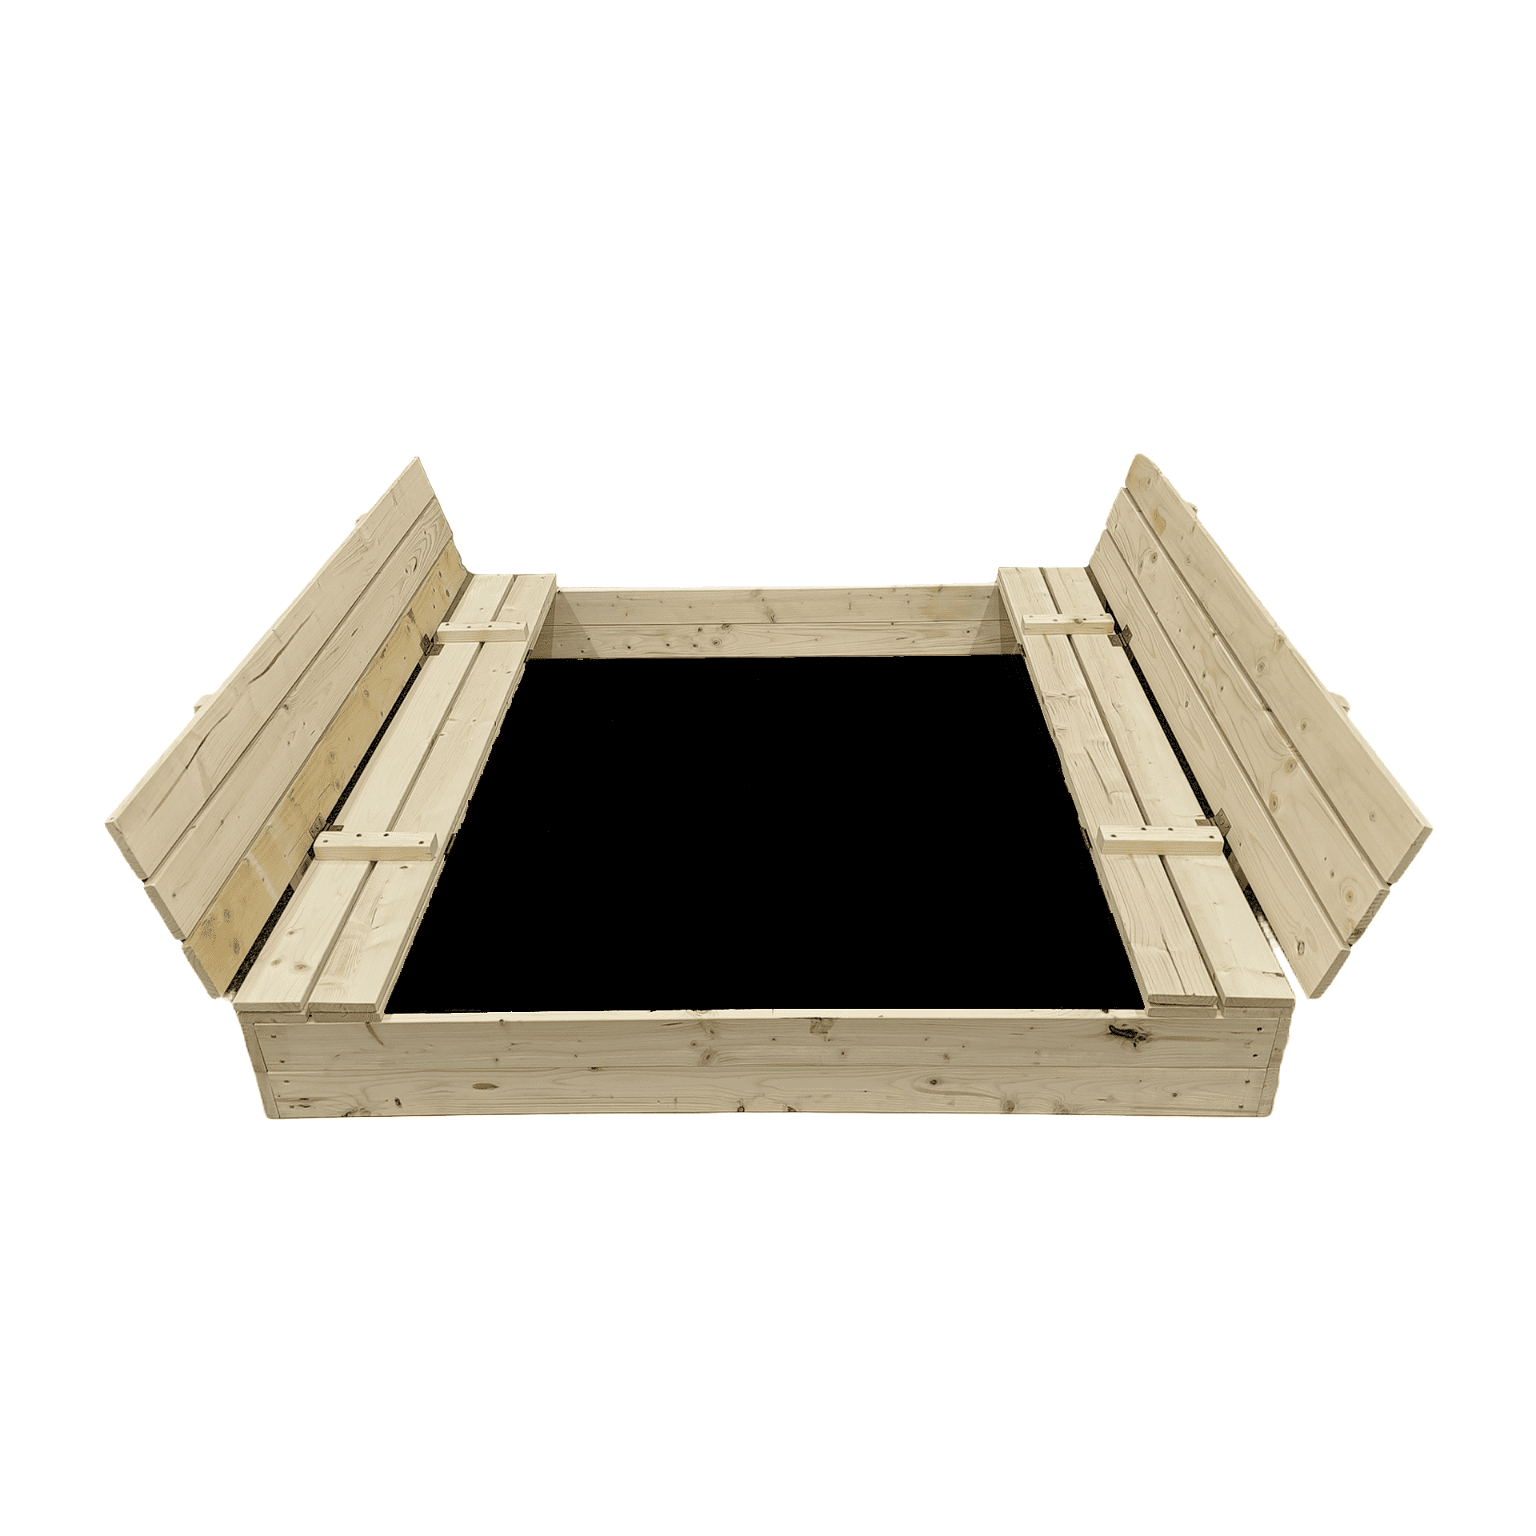 Smėlio dėžė Bonus Orbis su patiesalu ir 300kg smėlio, 140x140 cm - 2